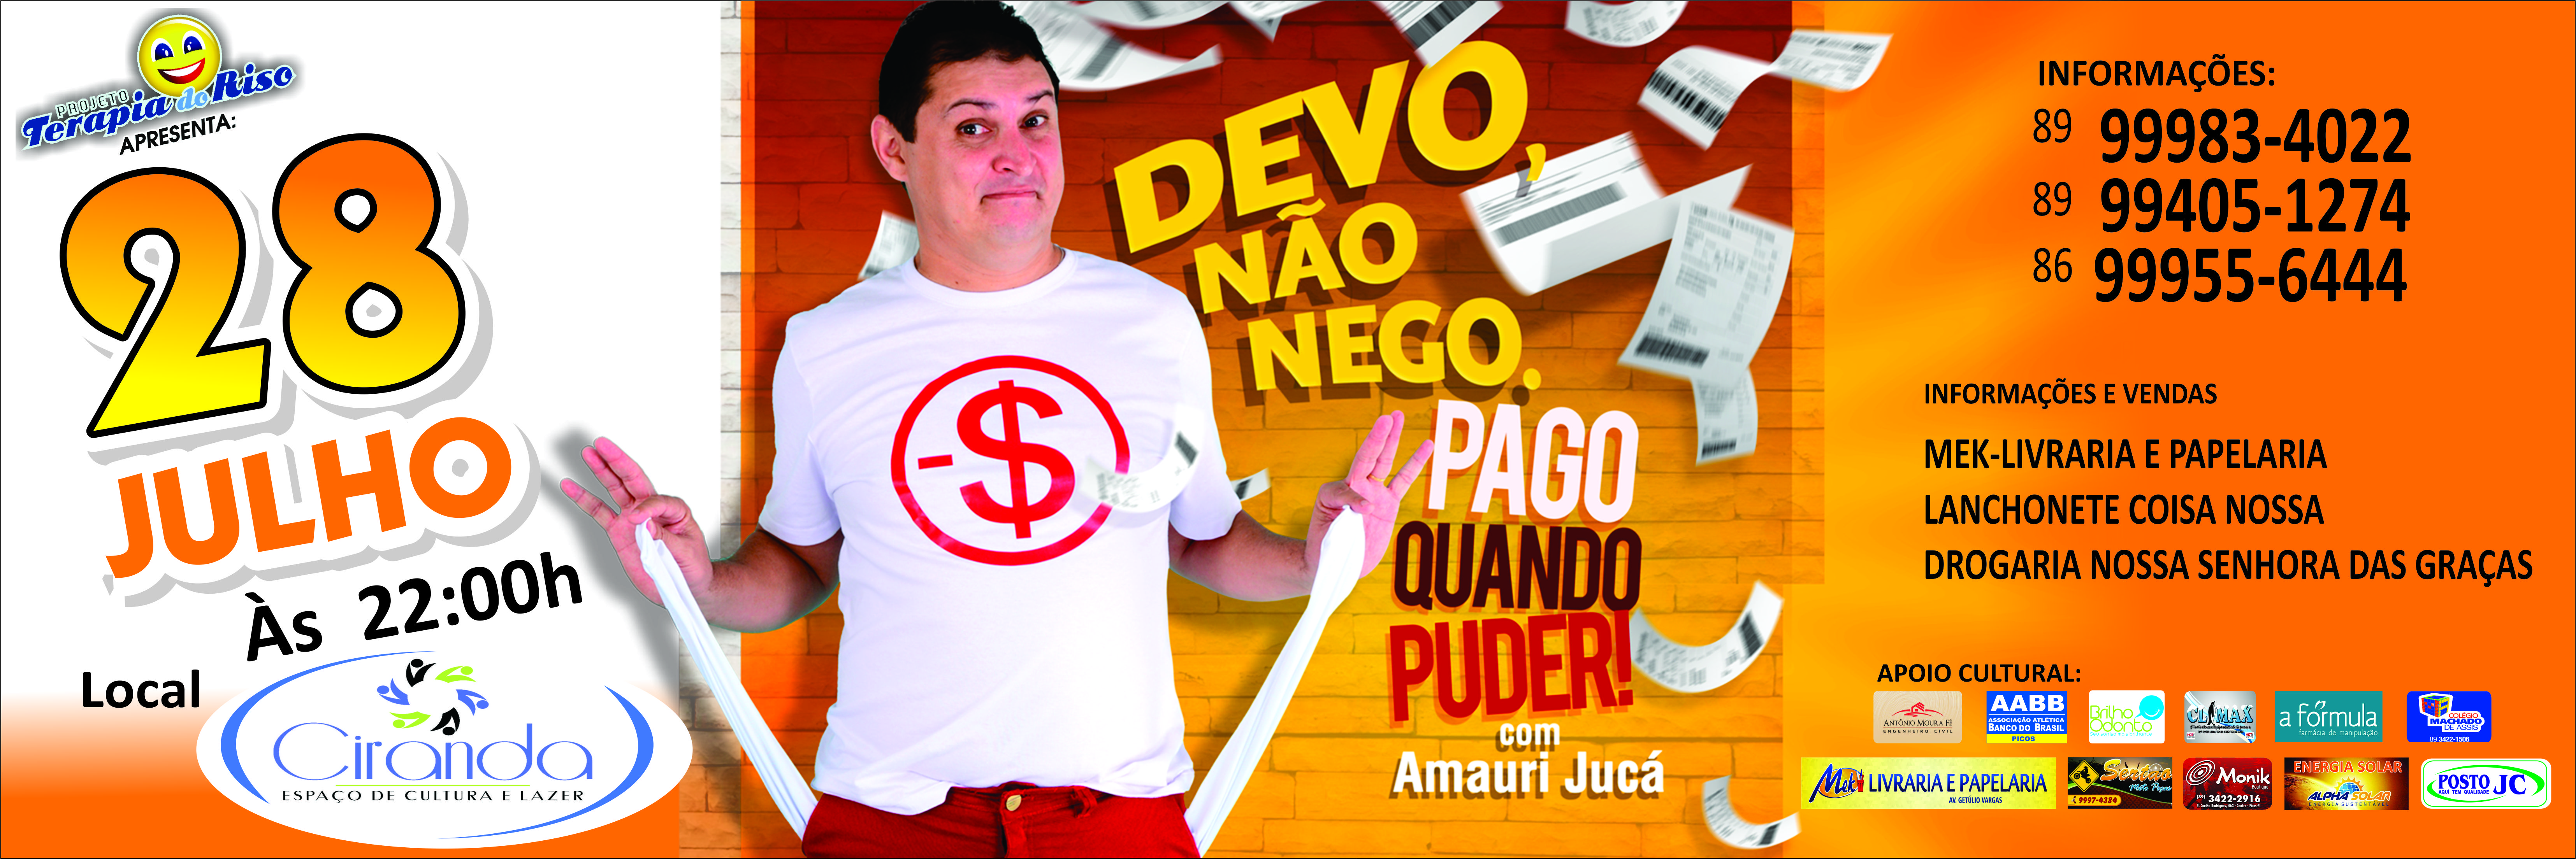 Terapia do Riso apresenta show com Amaury Jucá